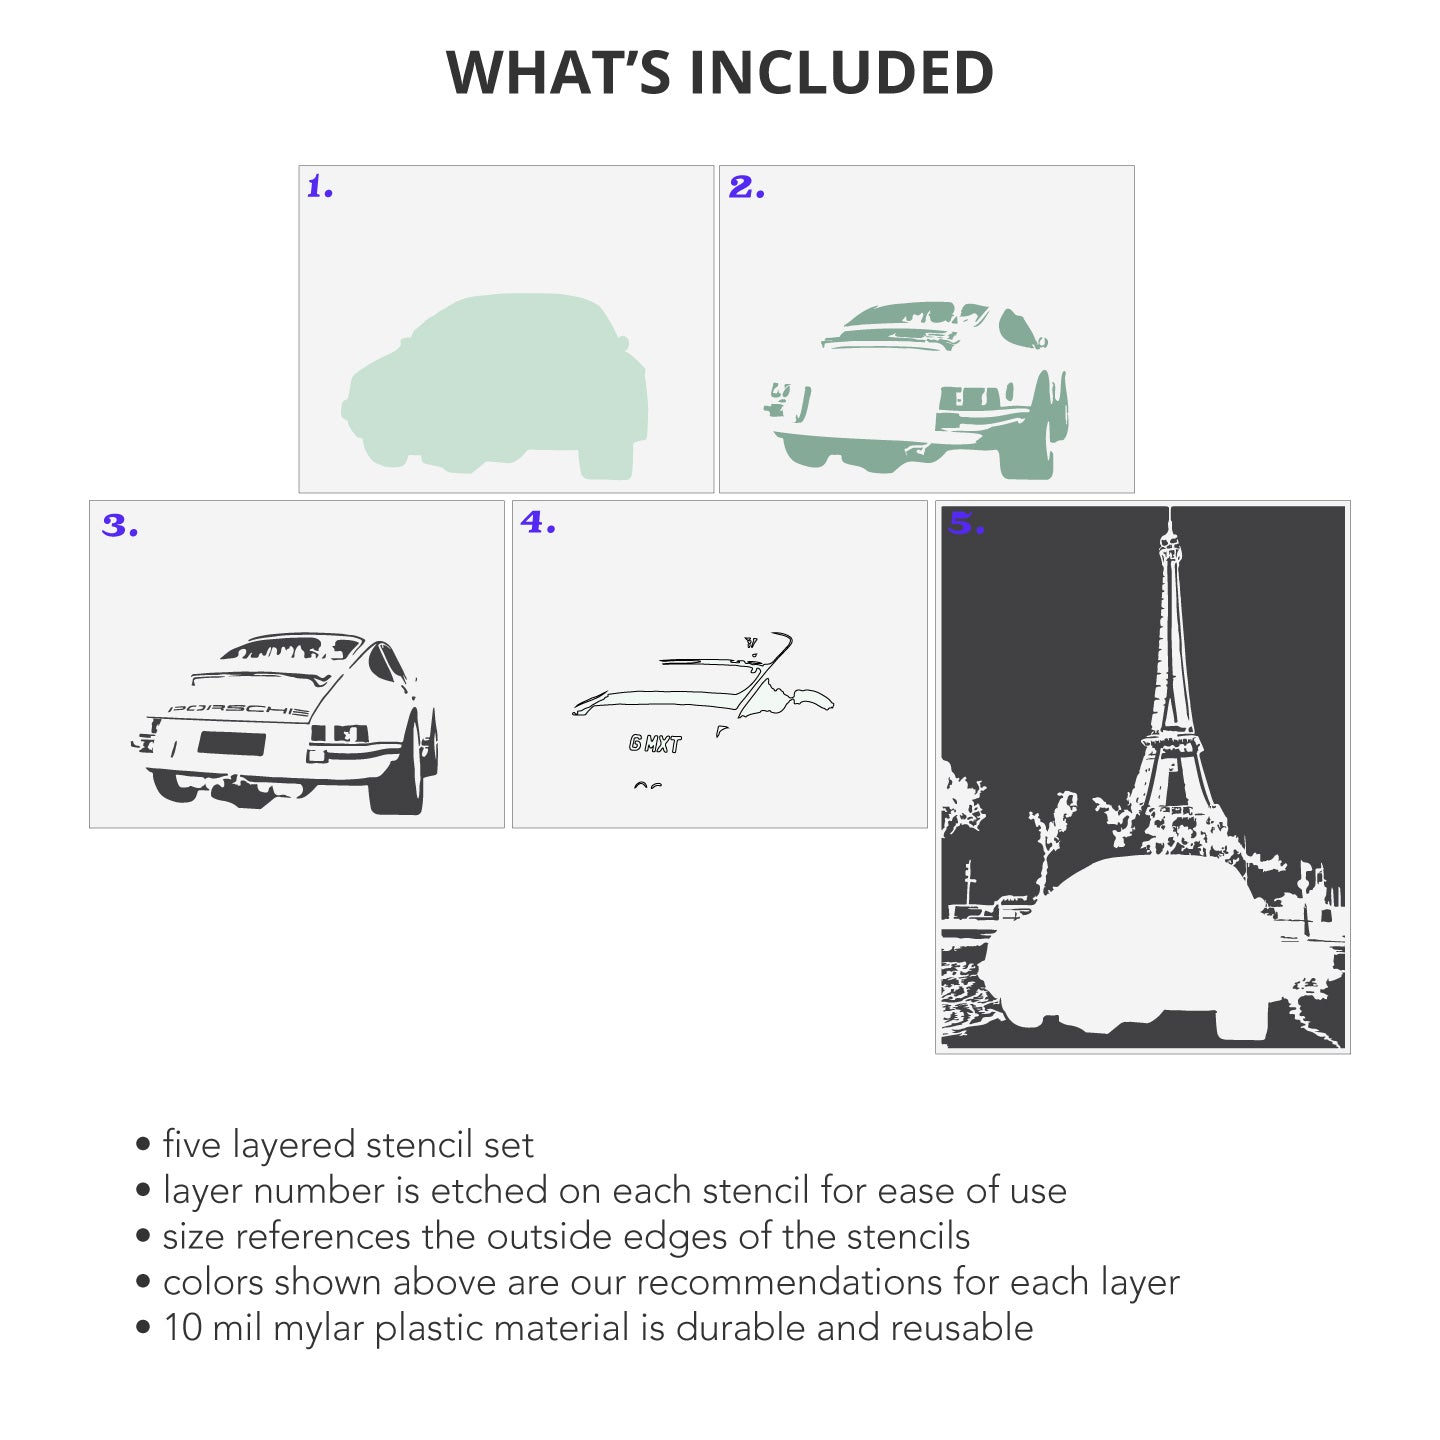 Porsche and Eiffel Tower 5 Layer Stencil Set